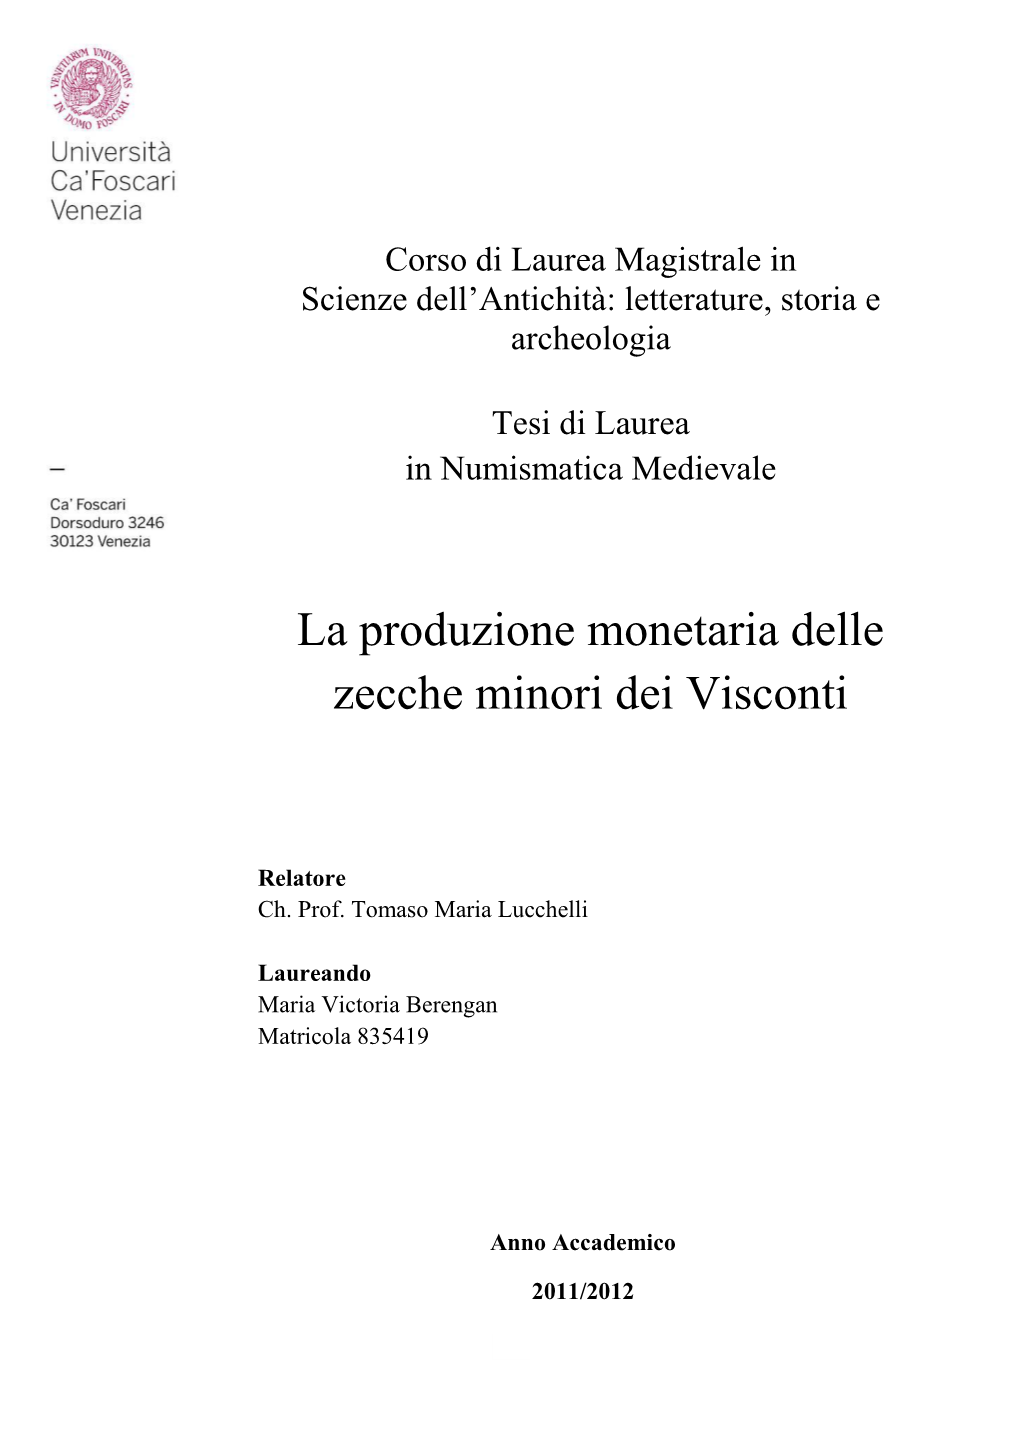 La Produzione Monetaria Delle Zecche Minori Dei Visconti